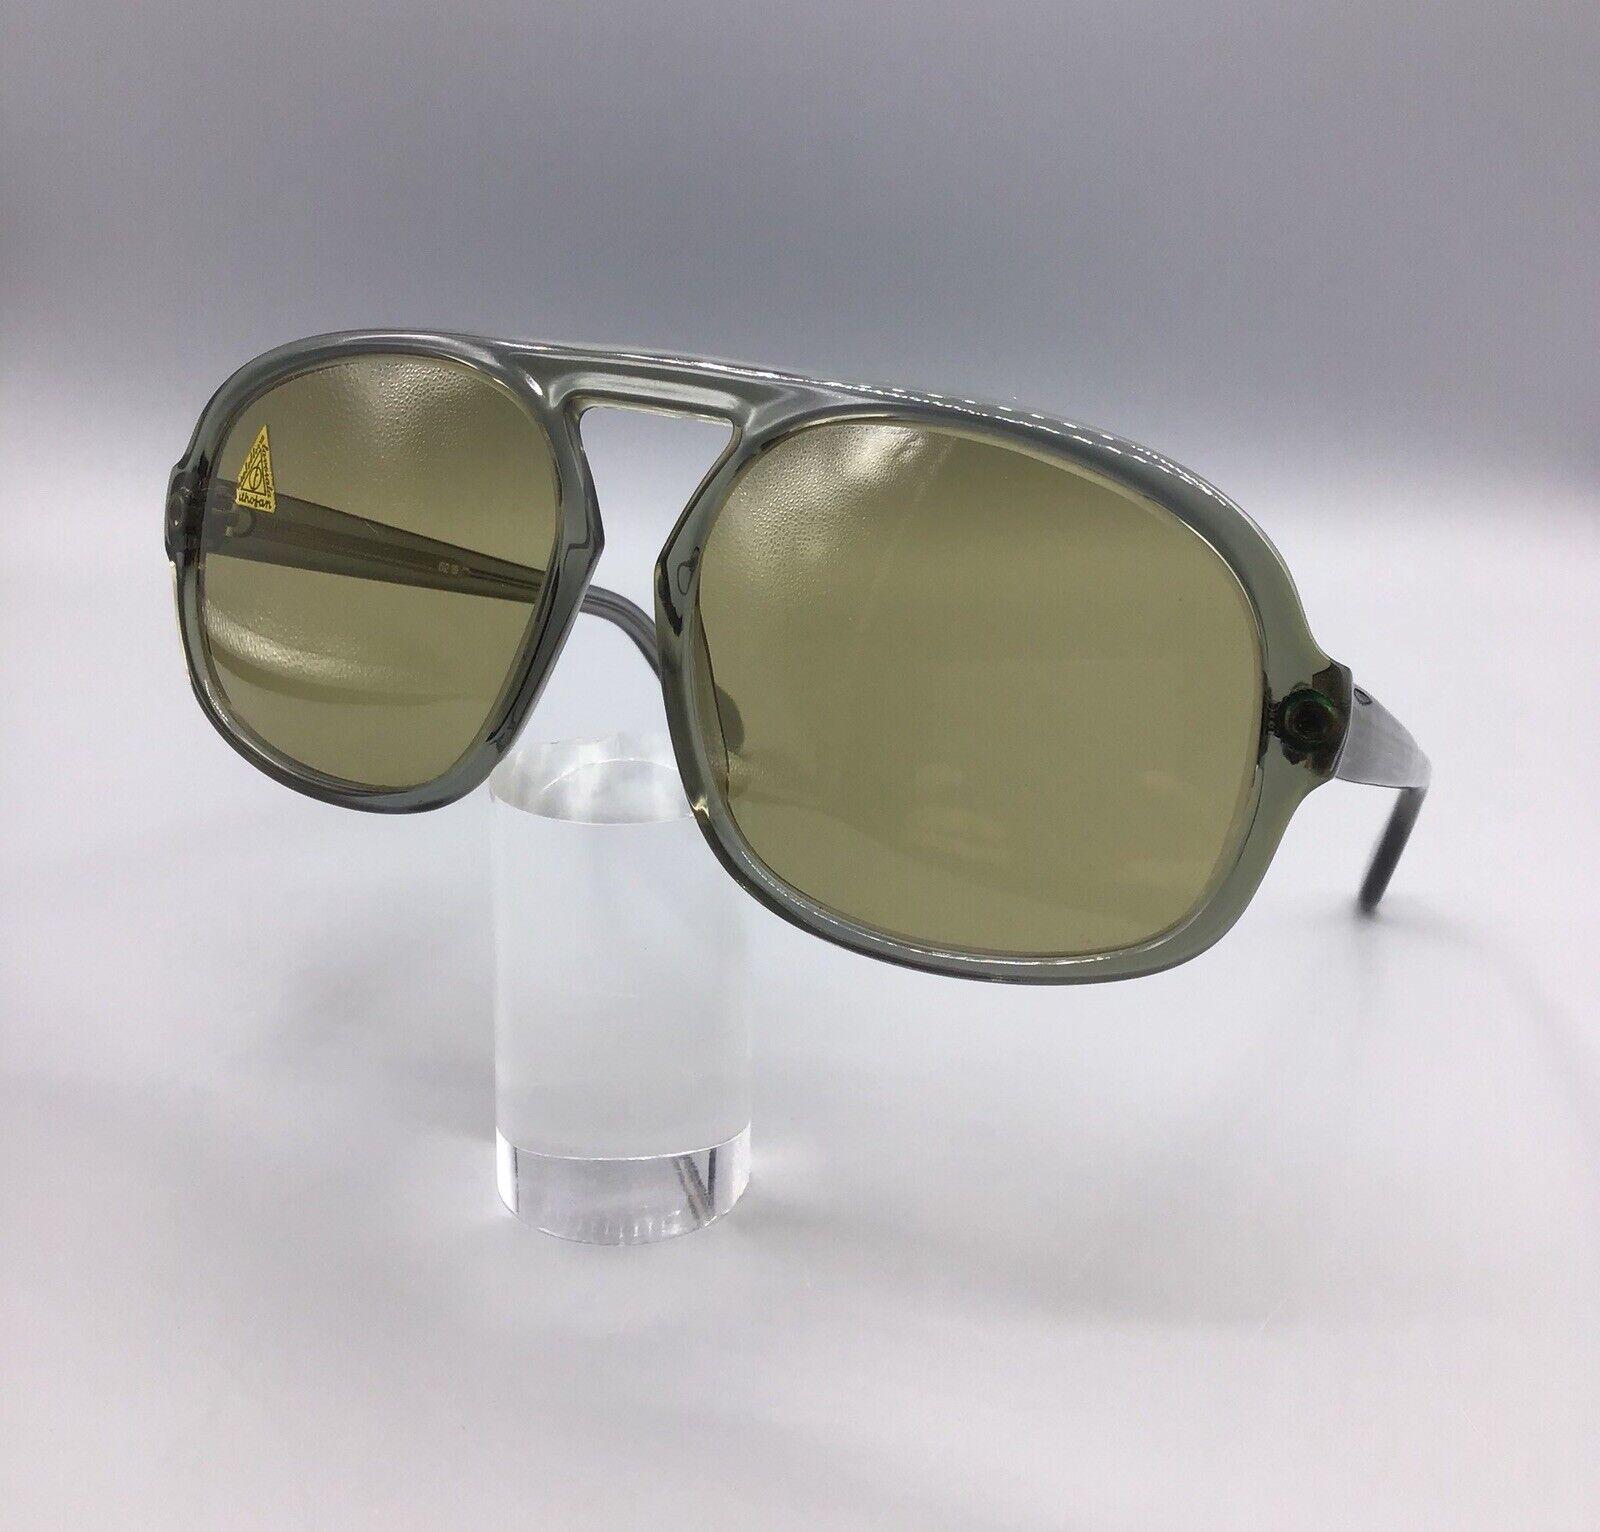 Bohler Crato Sunglasses Vintage Occhiale da Sole Lunettes Sonnenbrillen 6219